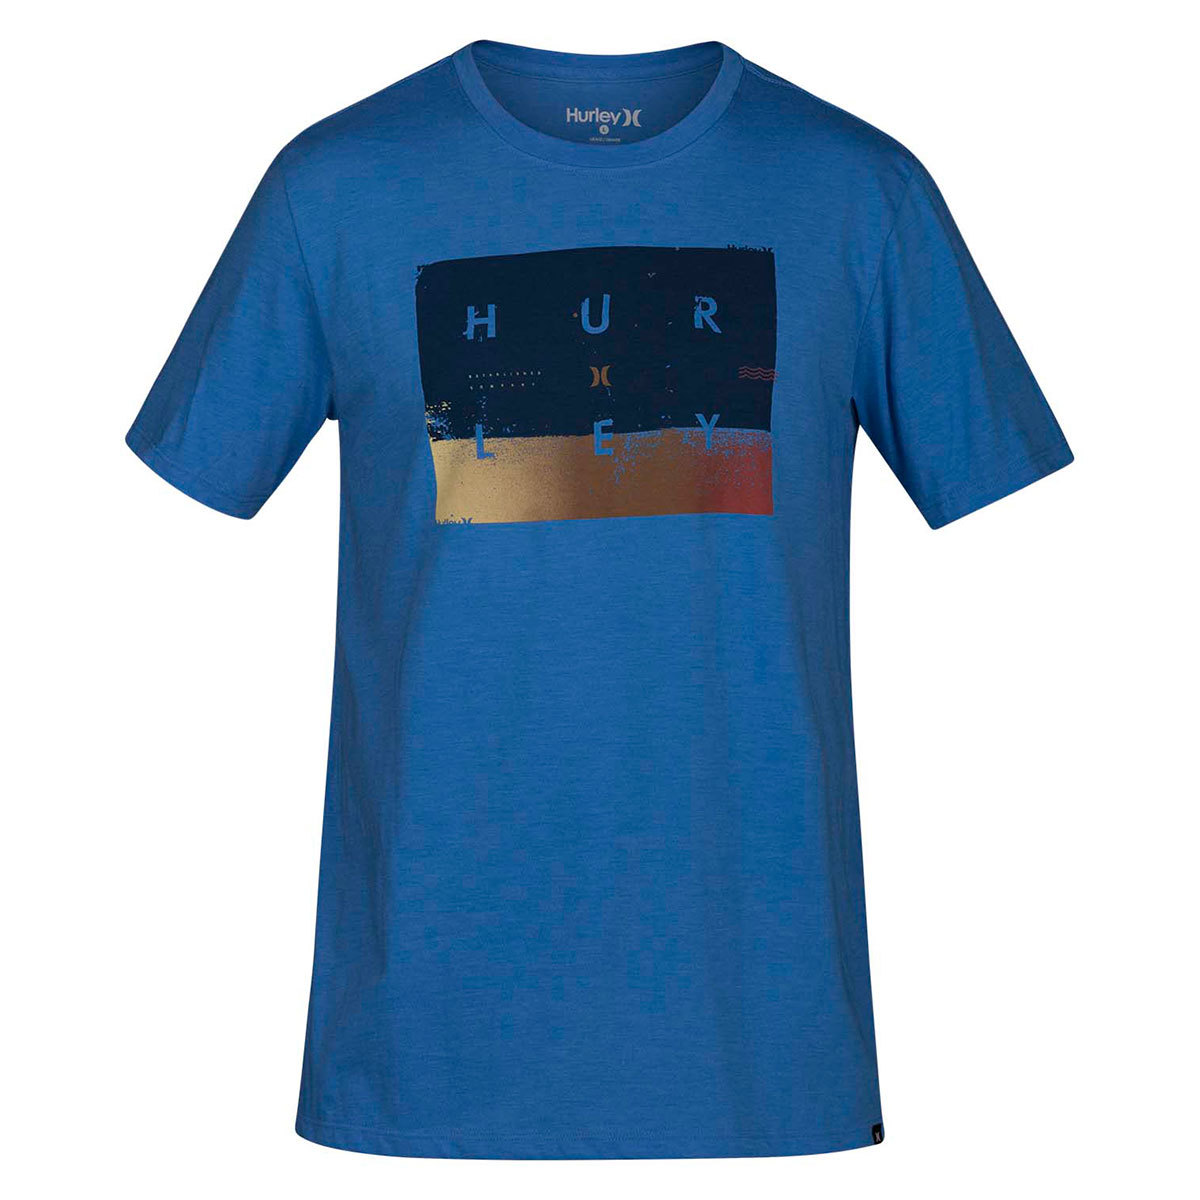 Hurley Guys' Premium Breaking Sets Short-Sleeve Tee - Blue, M